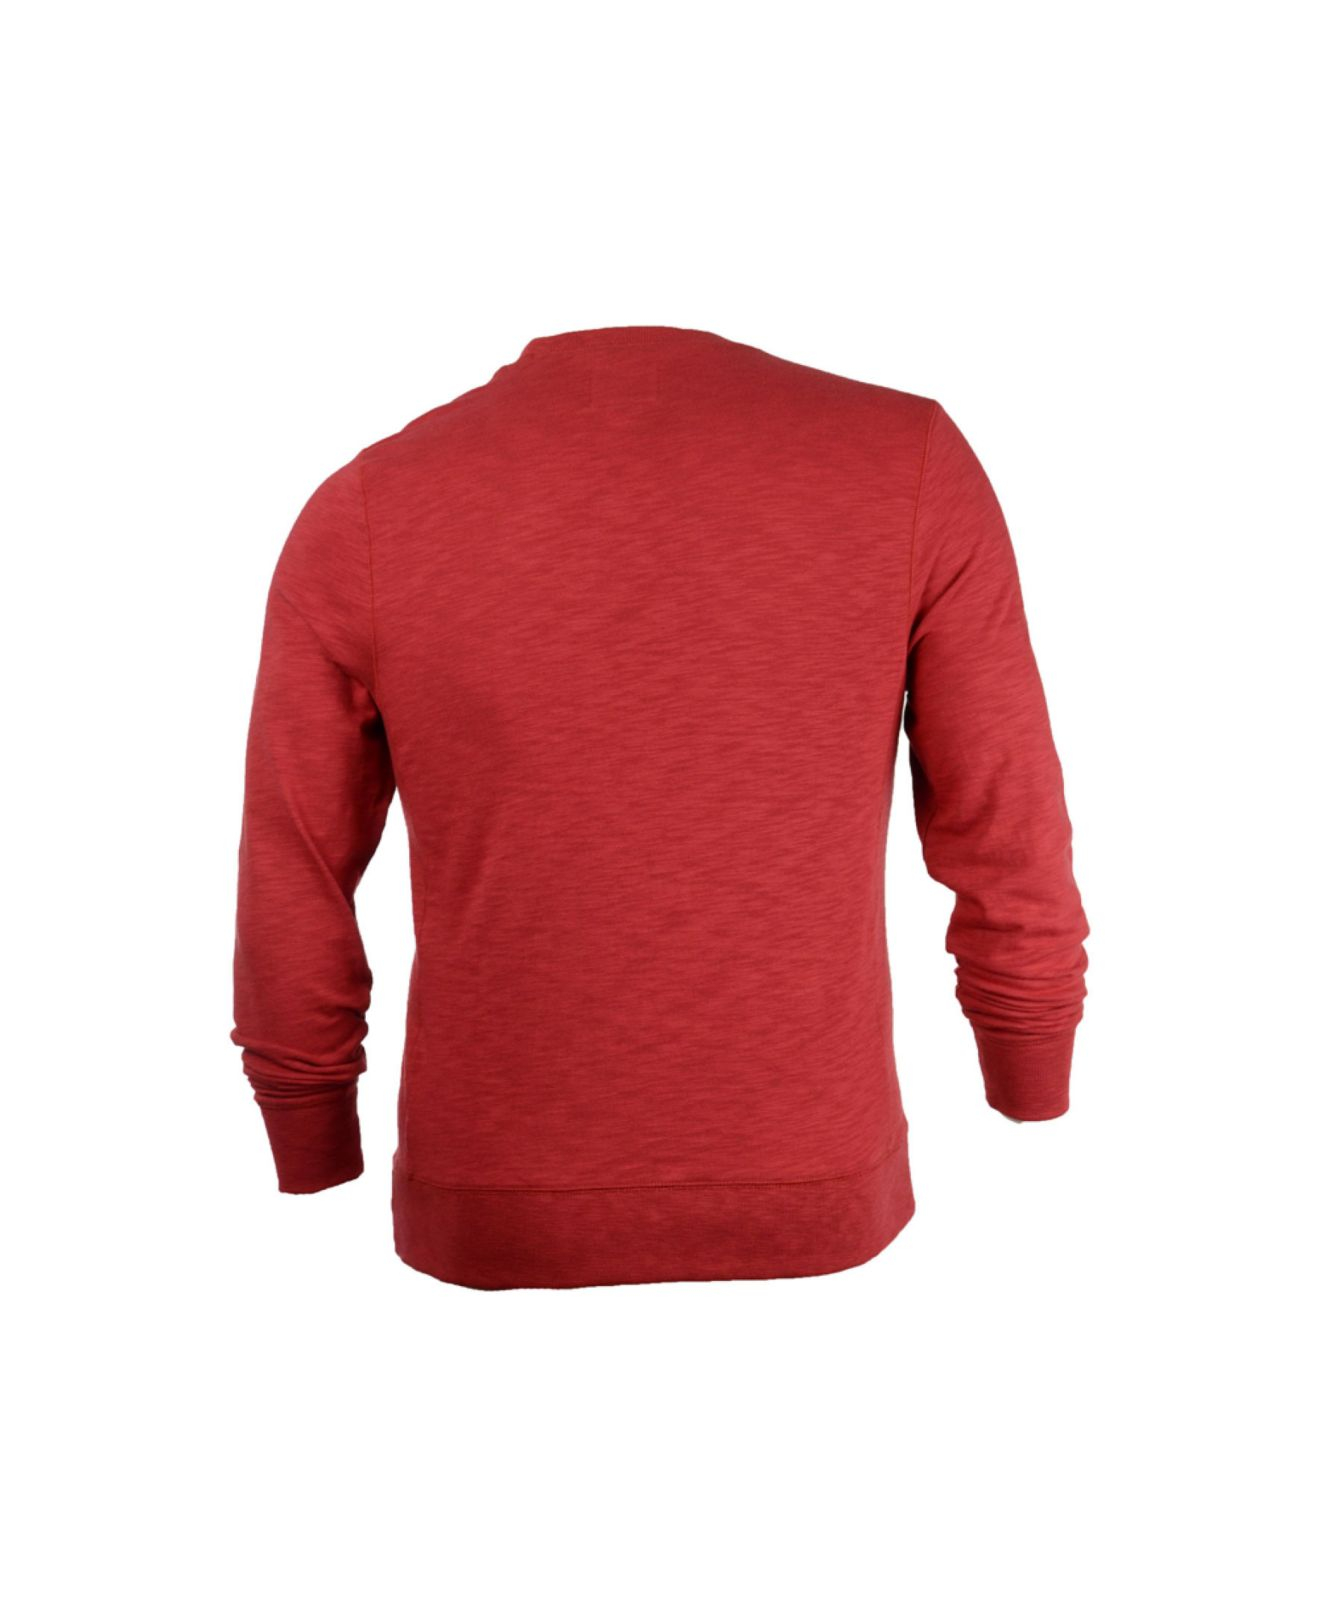 Lyst - 47 Brand Men's San Francisco 49ers Crew Sweatshirt in Red for Men